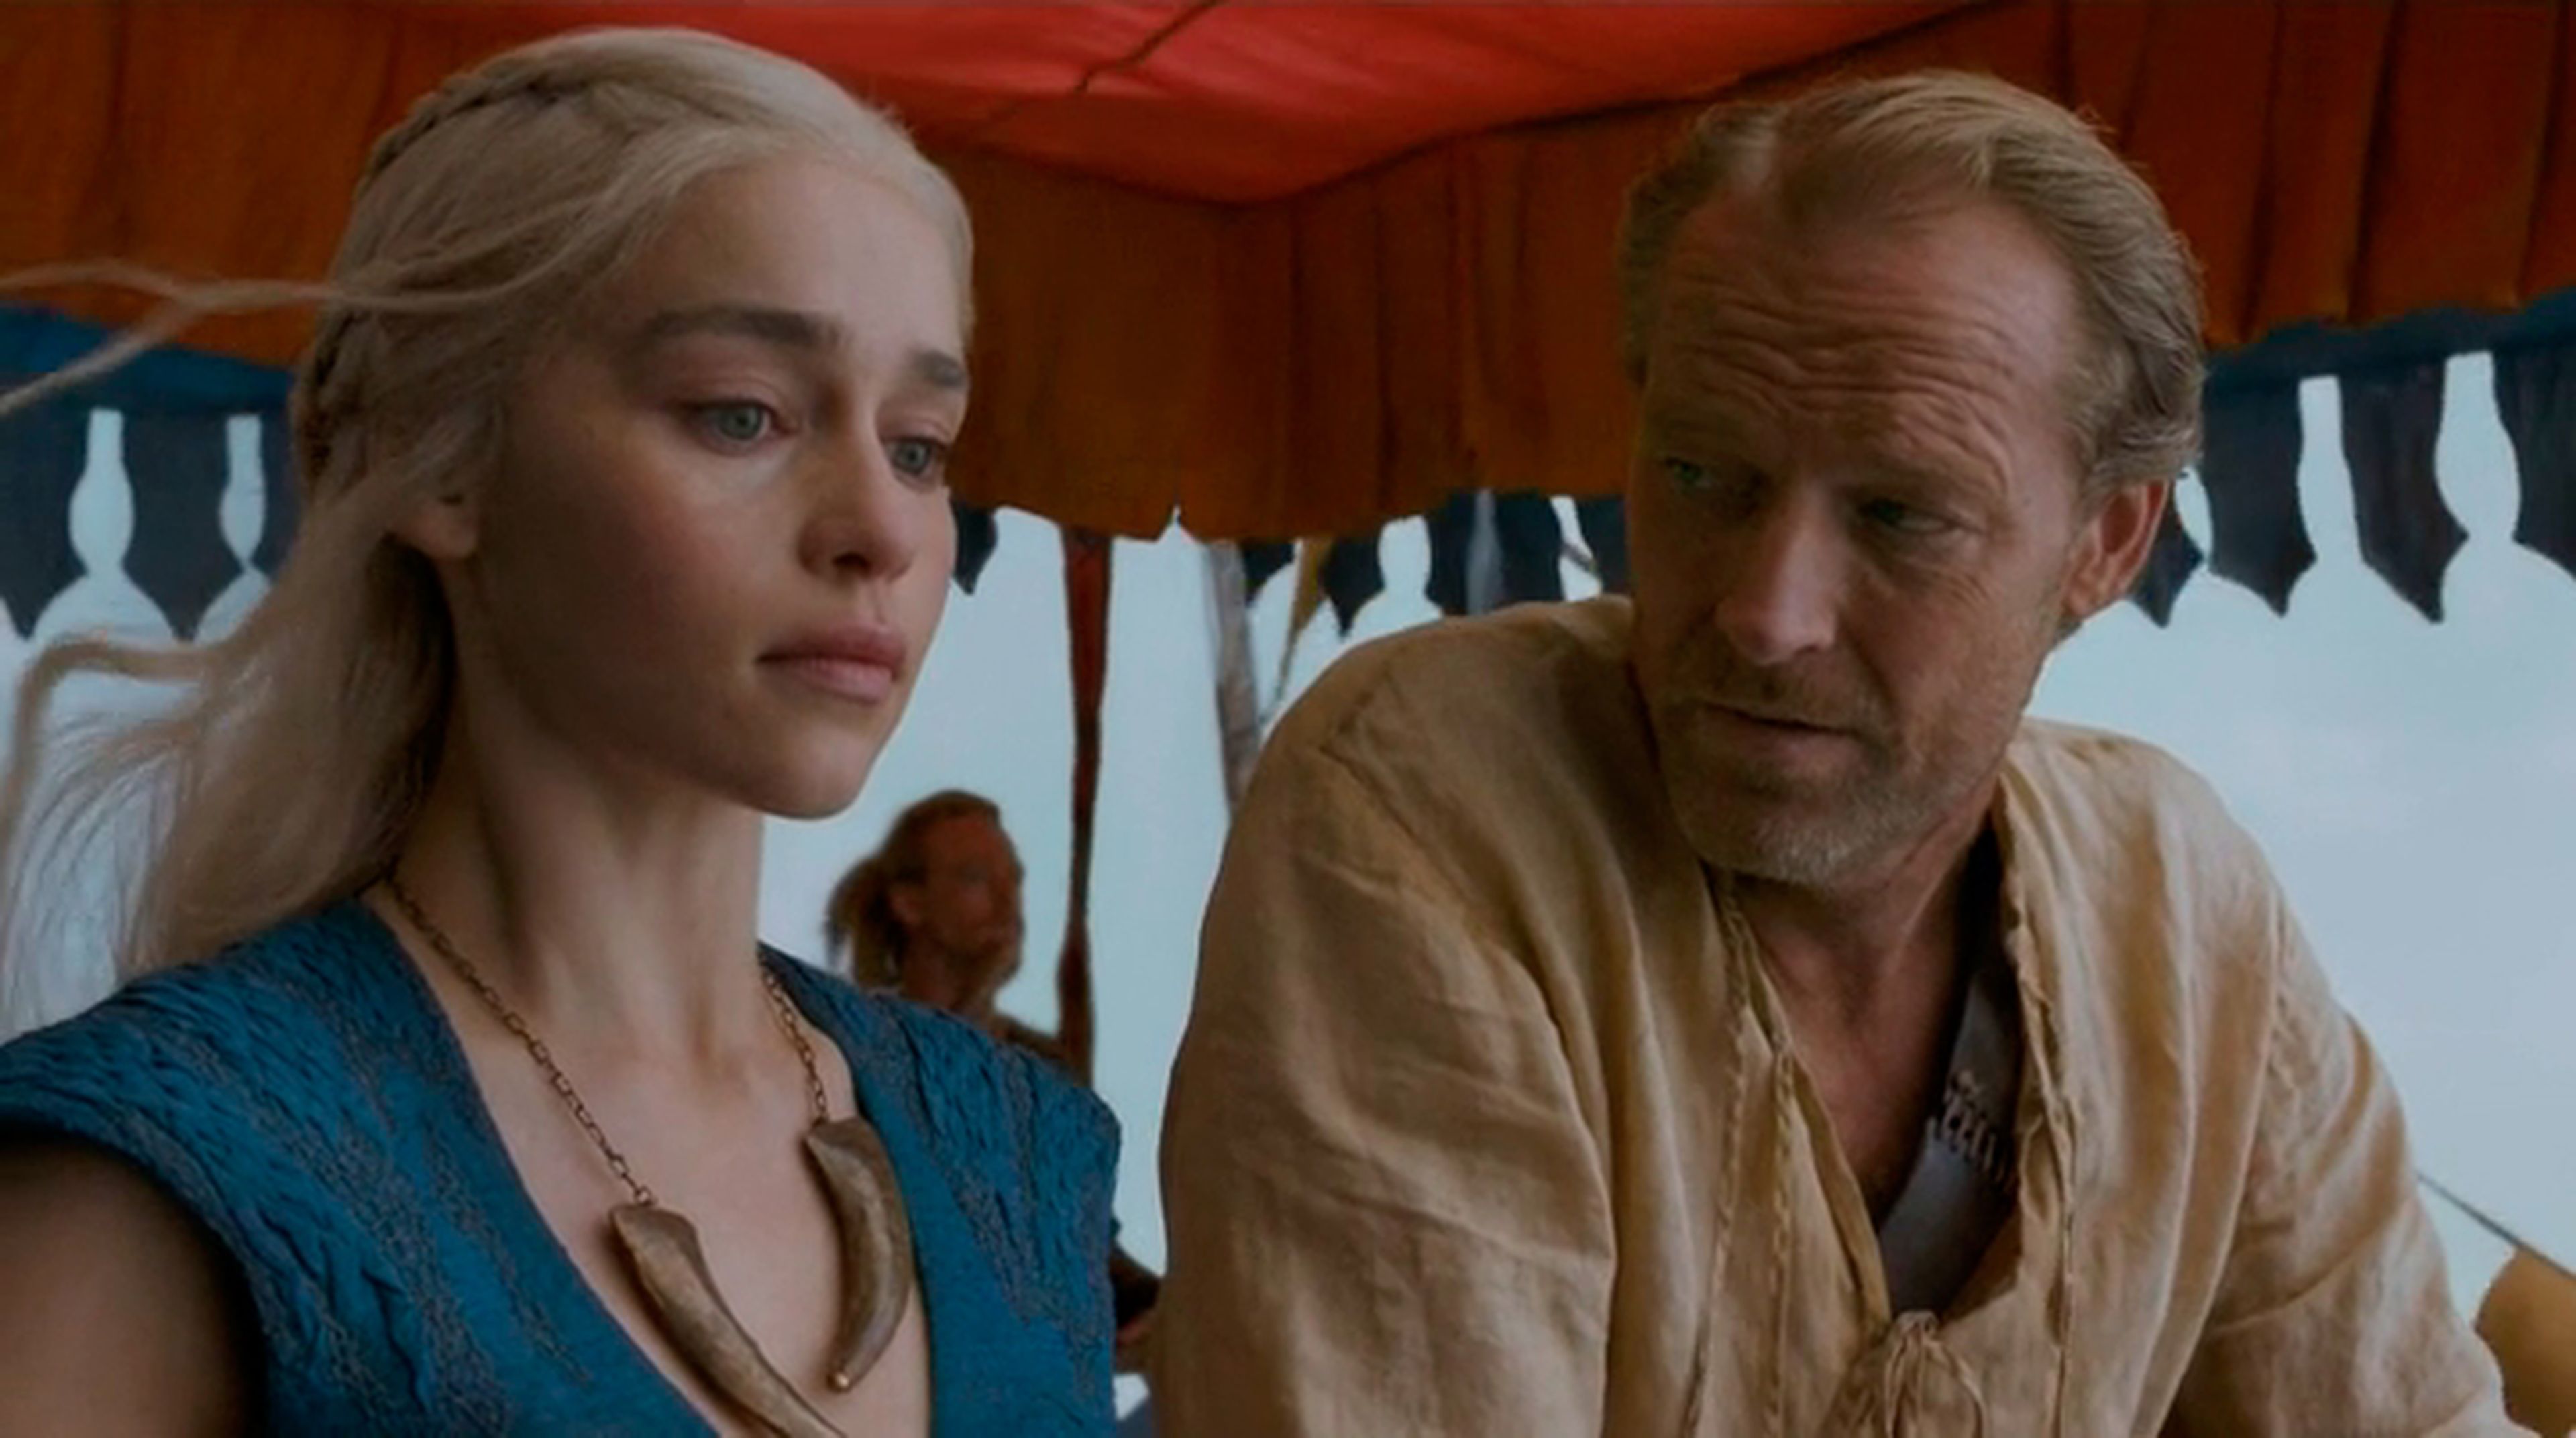 HBO desvela el contenido de la carta de Ser Jorah a Khaleesi en Juego de Tronos